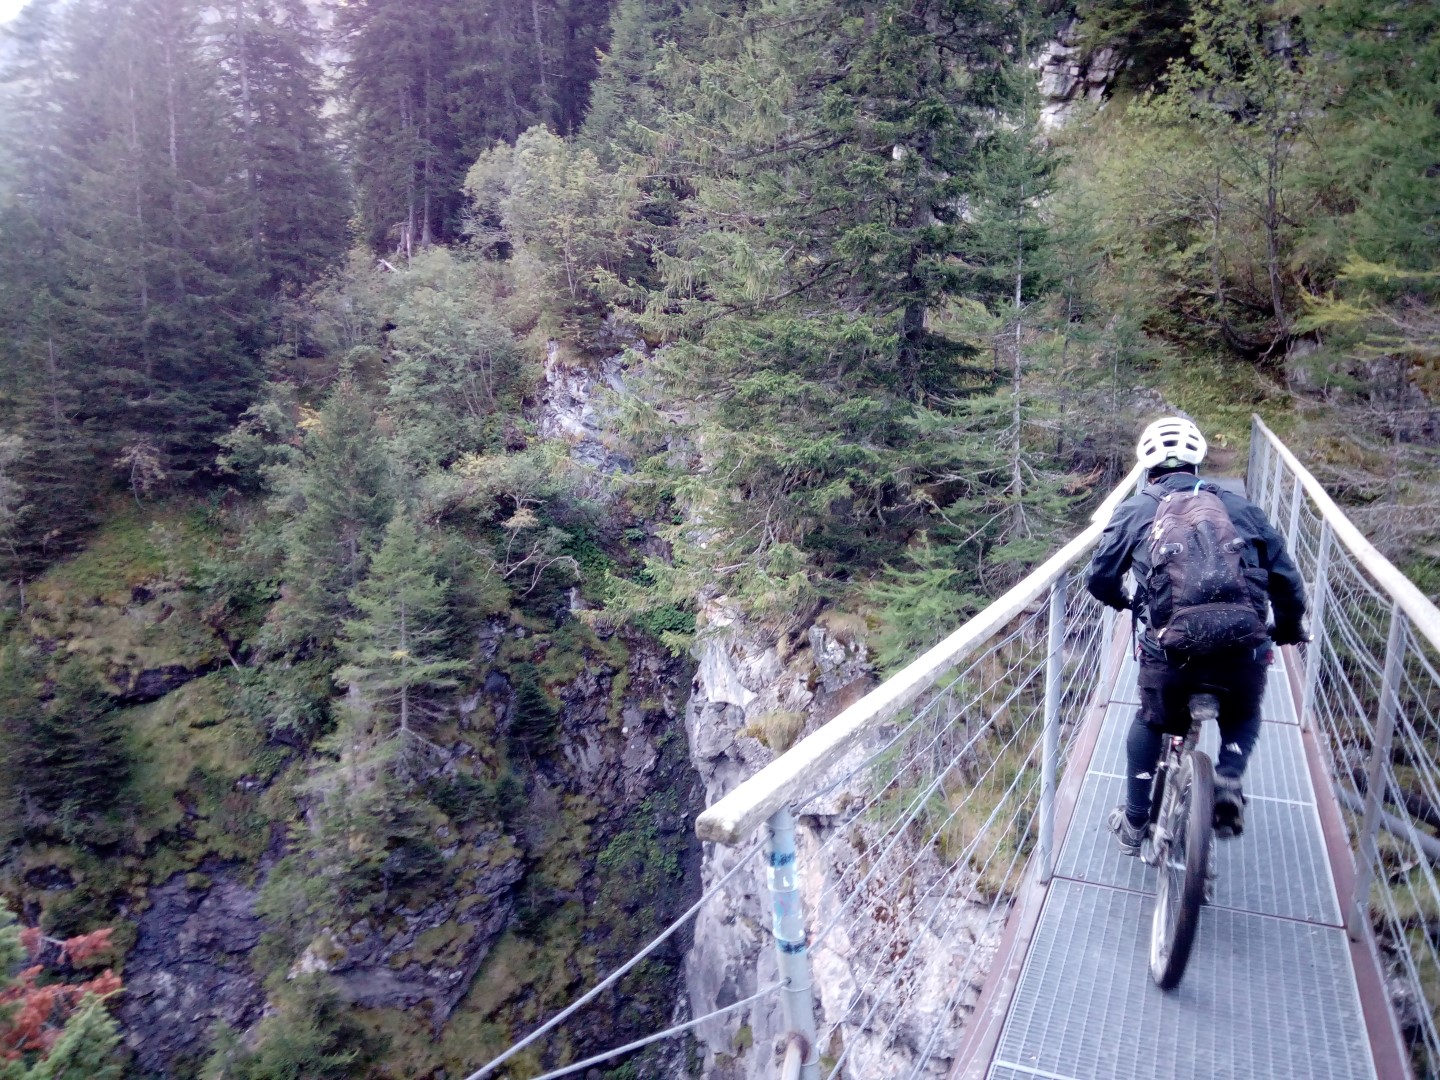 אנדורו בייקפאקינג- חופשת אופניים "אחרת" בצפון איטליה ושוויץ